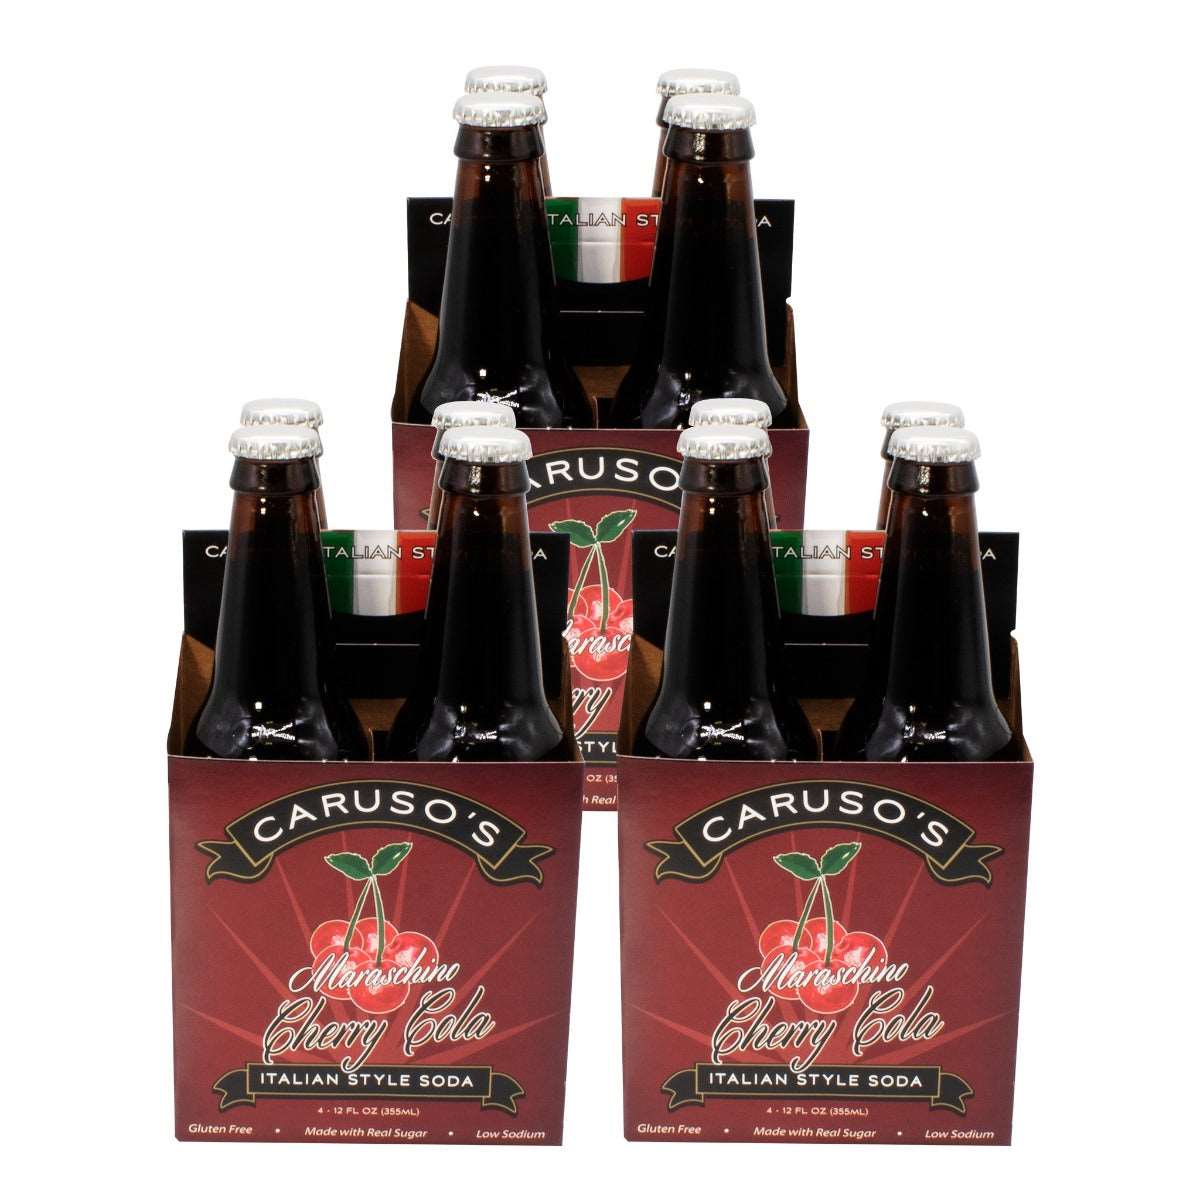 3 4-Packs of Caruso's Maraschino Cherry Cola